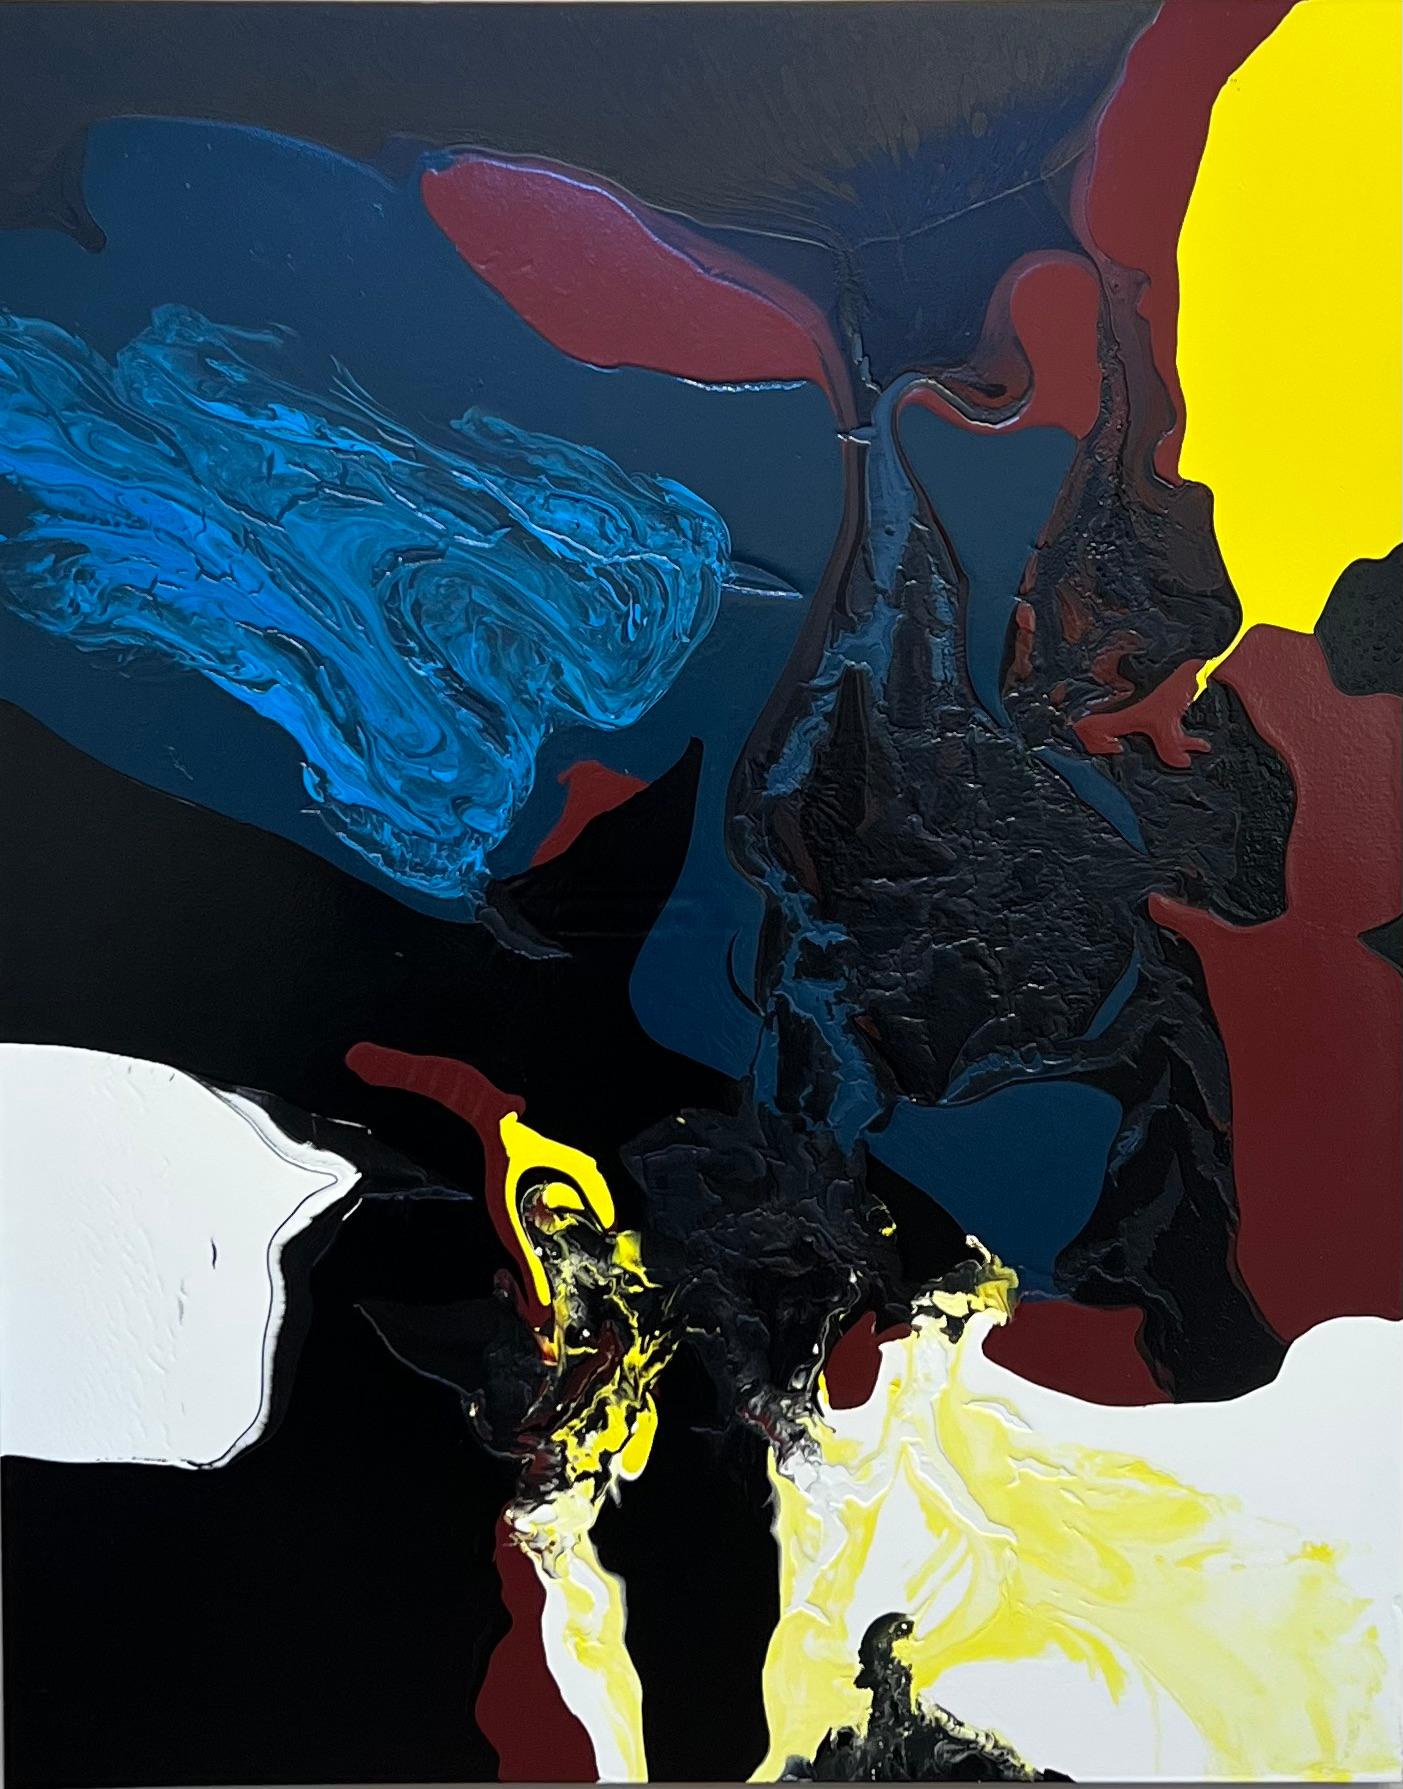 Hot Mix, par Glenn Green, abstrait, peinture, contemporain, texture, noir, rouge

Peinture sur toile contemporaine, texturée, aux couleurs luxuriantes.

L'artiste est basé à Santa Fe, au Nouveau-Mexique.